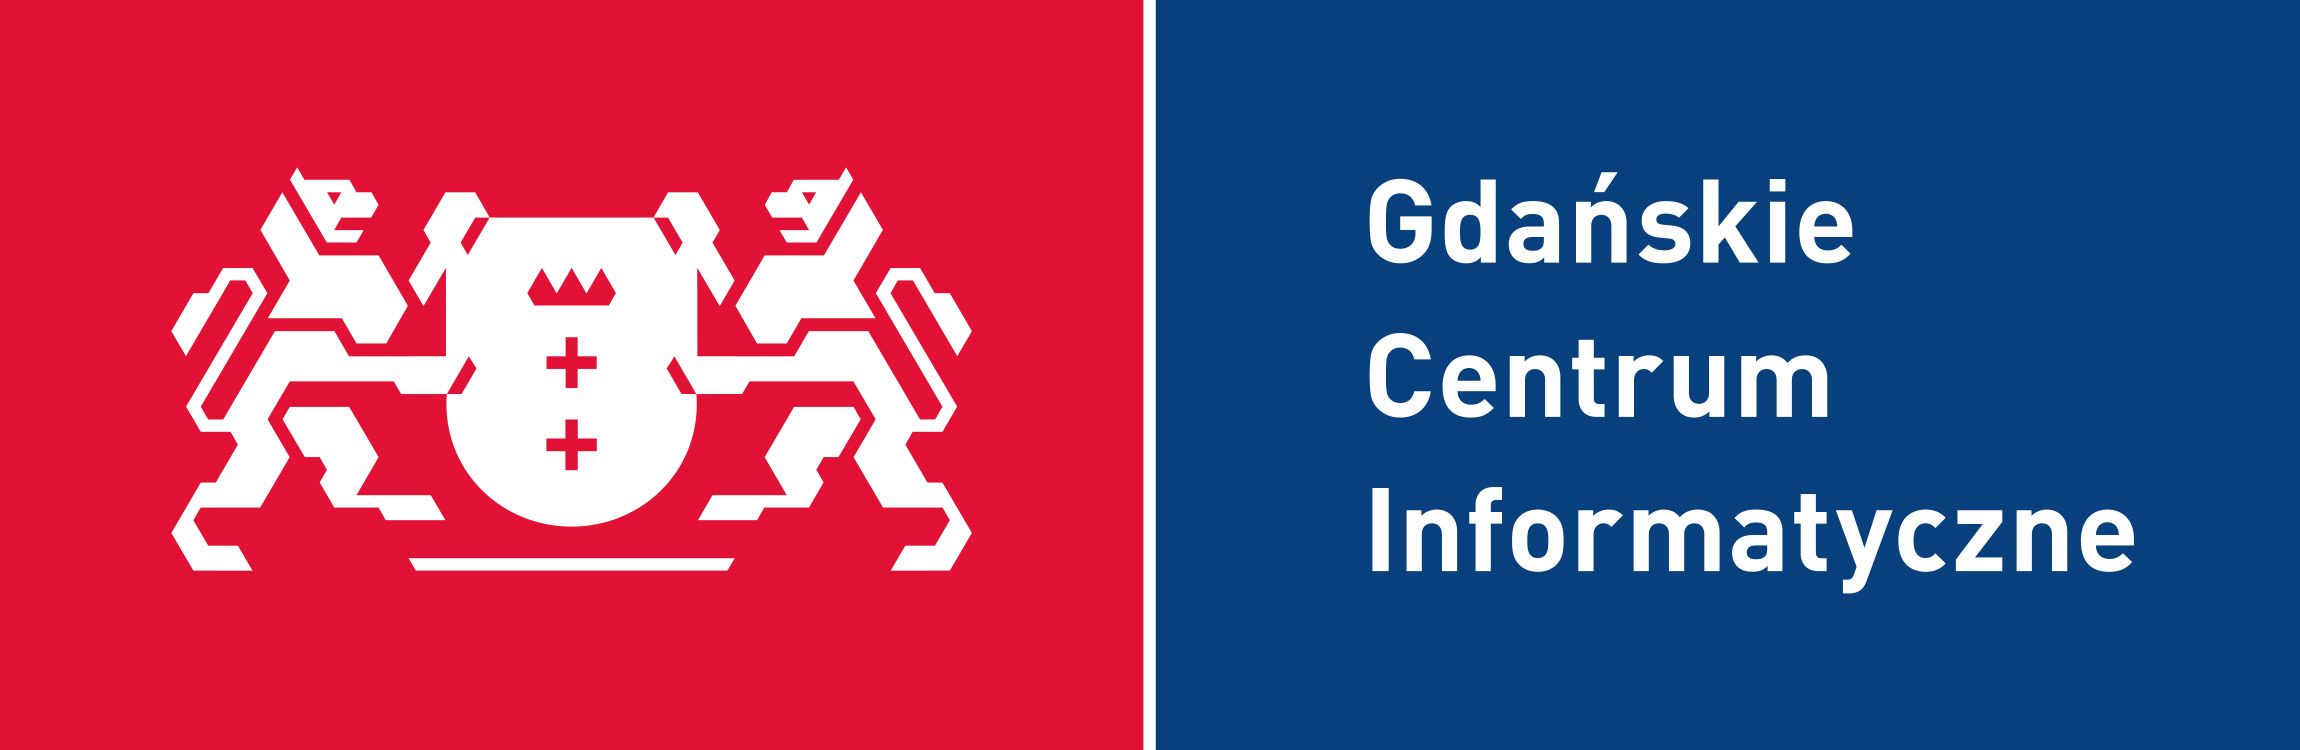 gdanskie-centrum-informatyczne